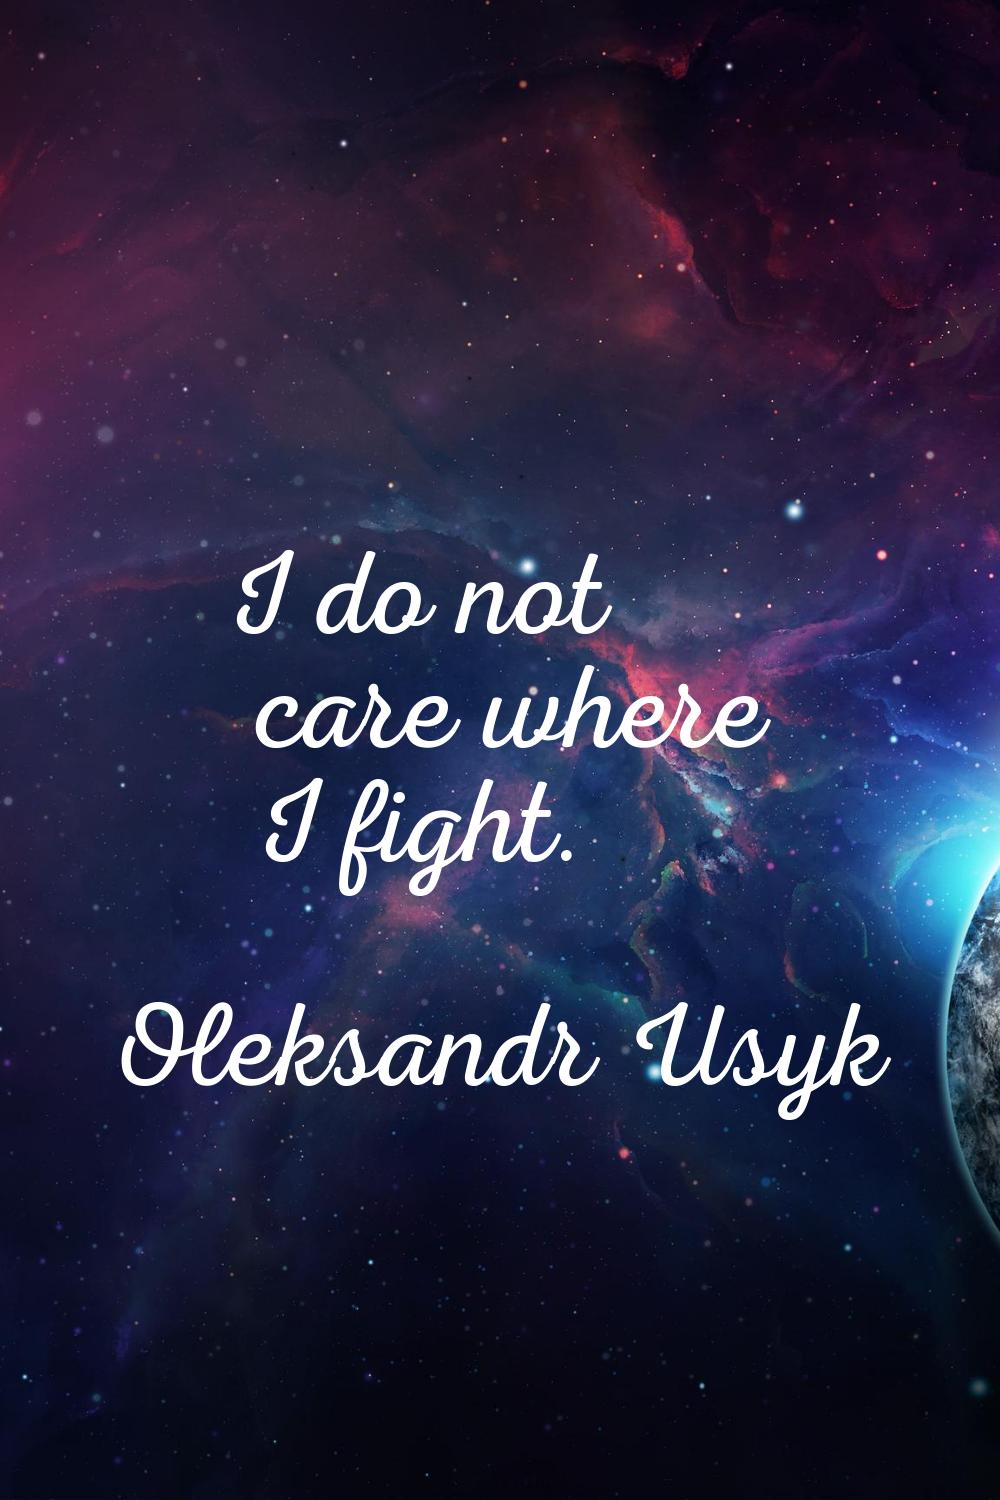 I do not care where I fight.